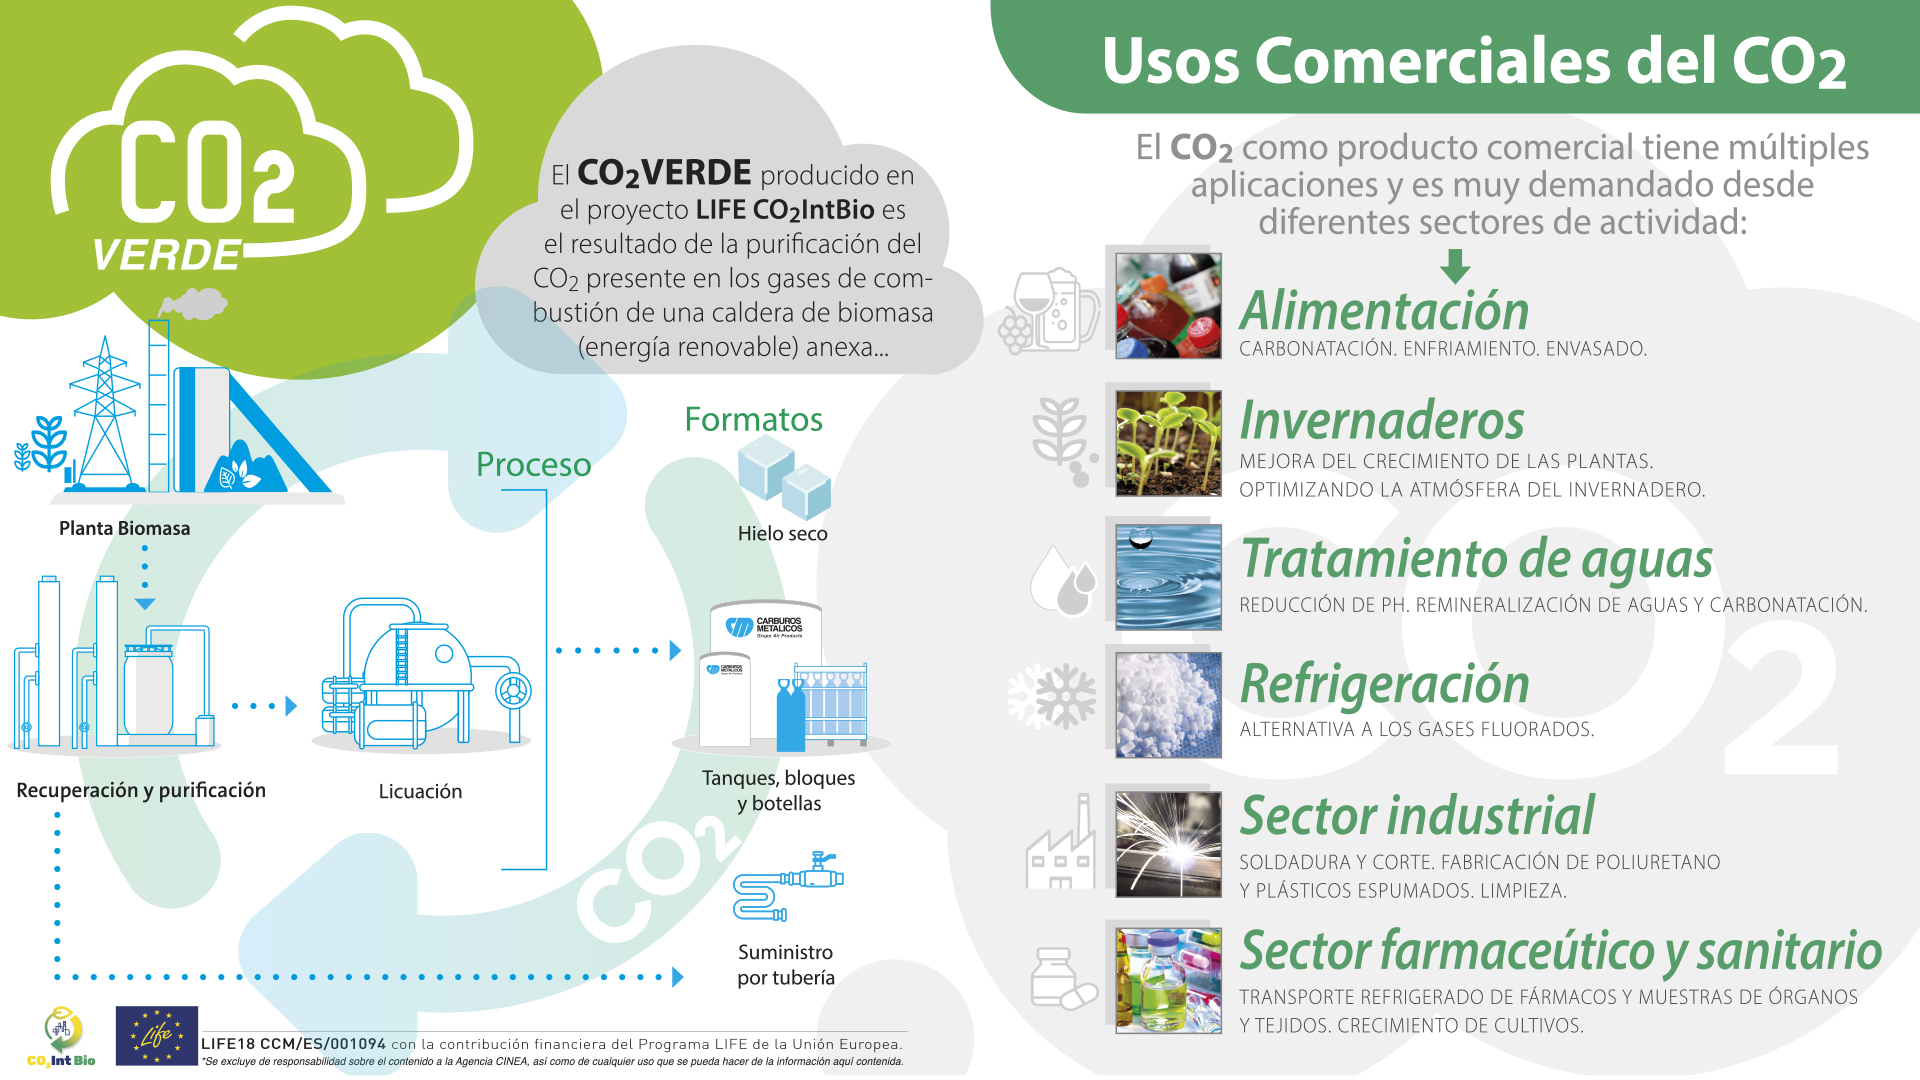 Usos comerciales del CO2